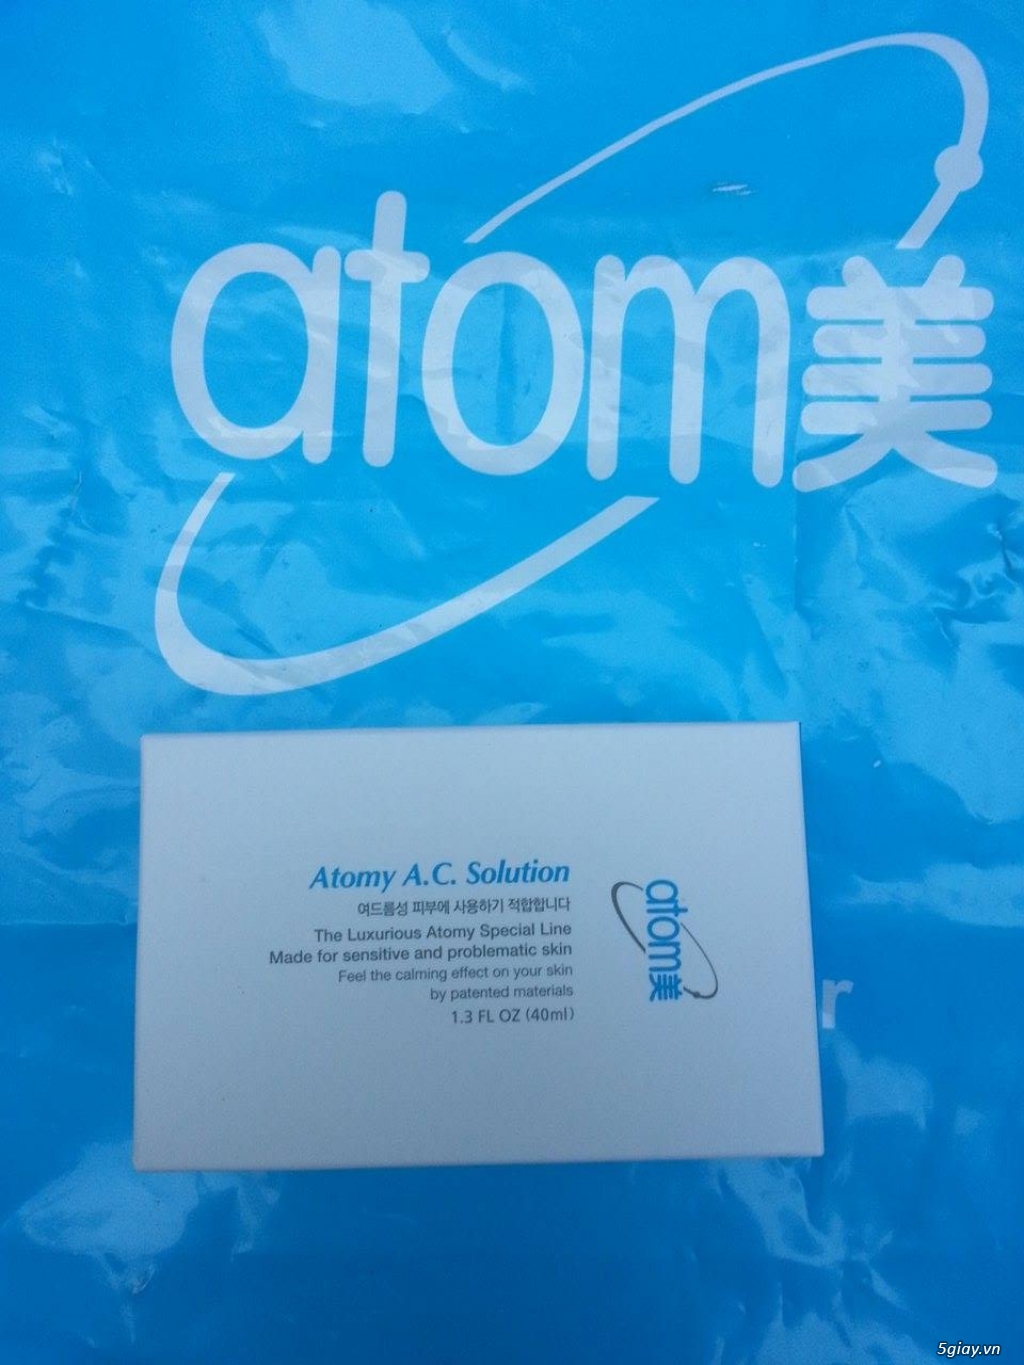 Mỹ phẩm Atomy chính hãng của Hàn Quốc, sản phẩm trị mụn, dưỡng da, 520k, miễn phí ship, 0986.366.864 - 2